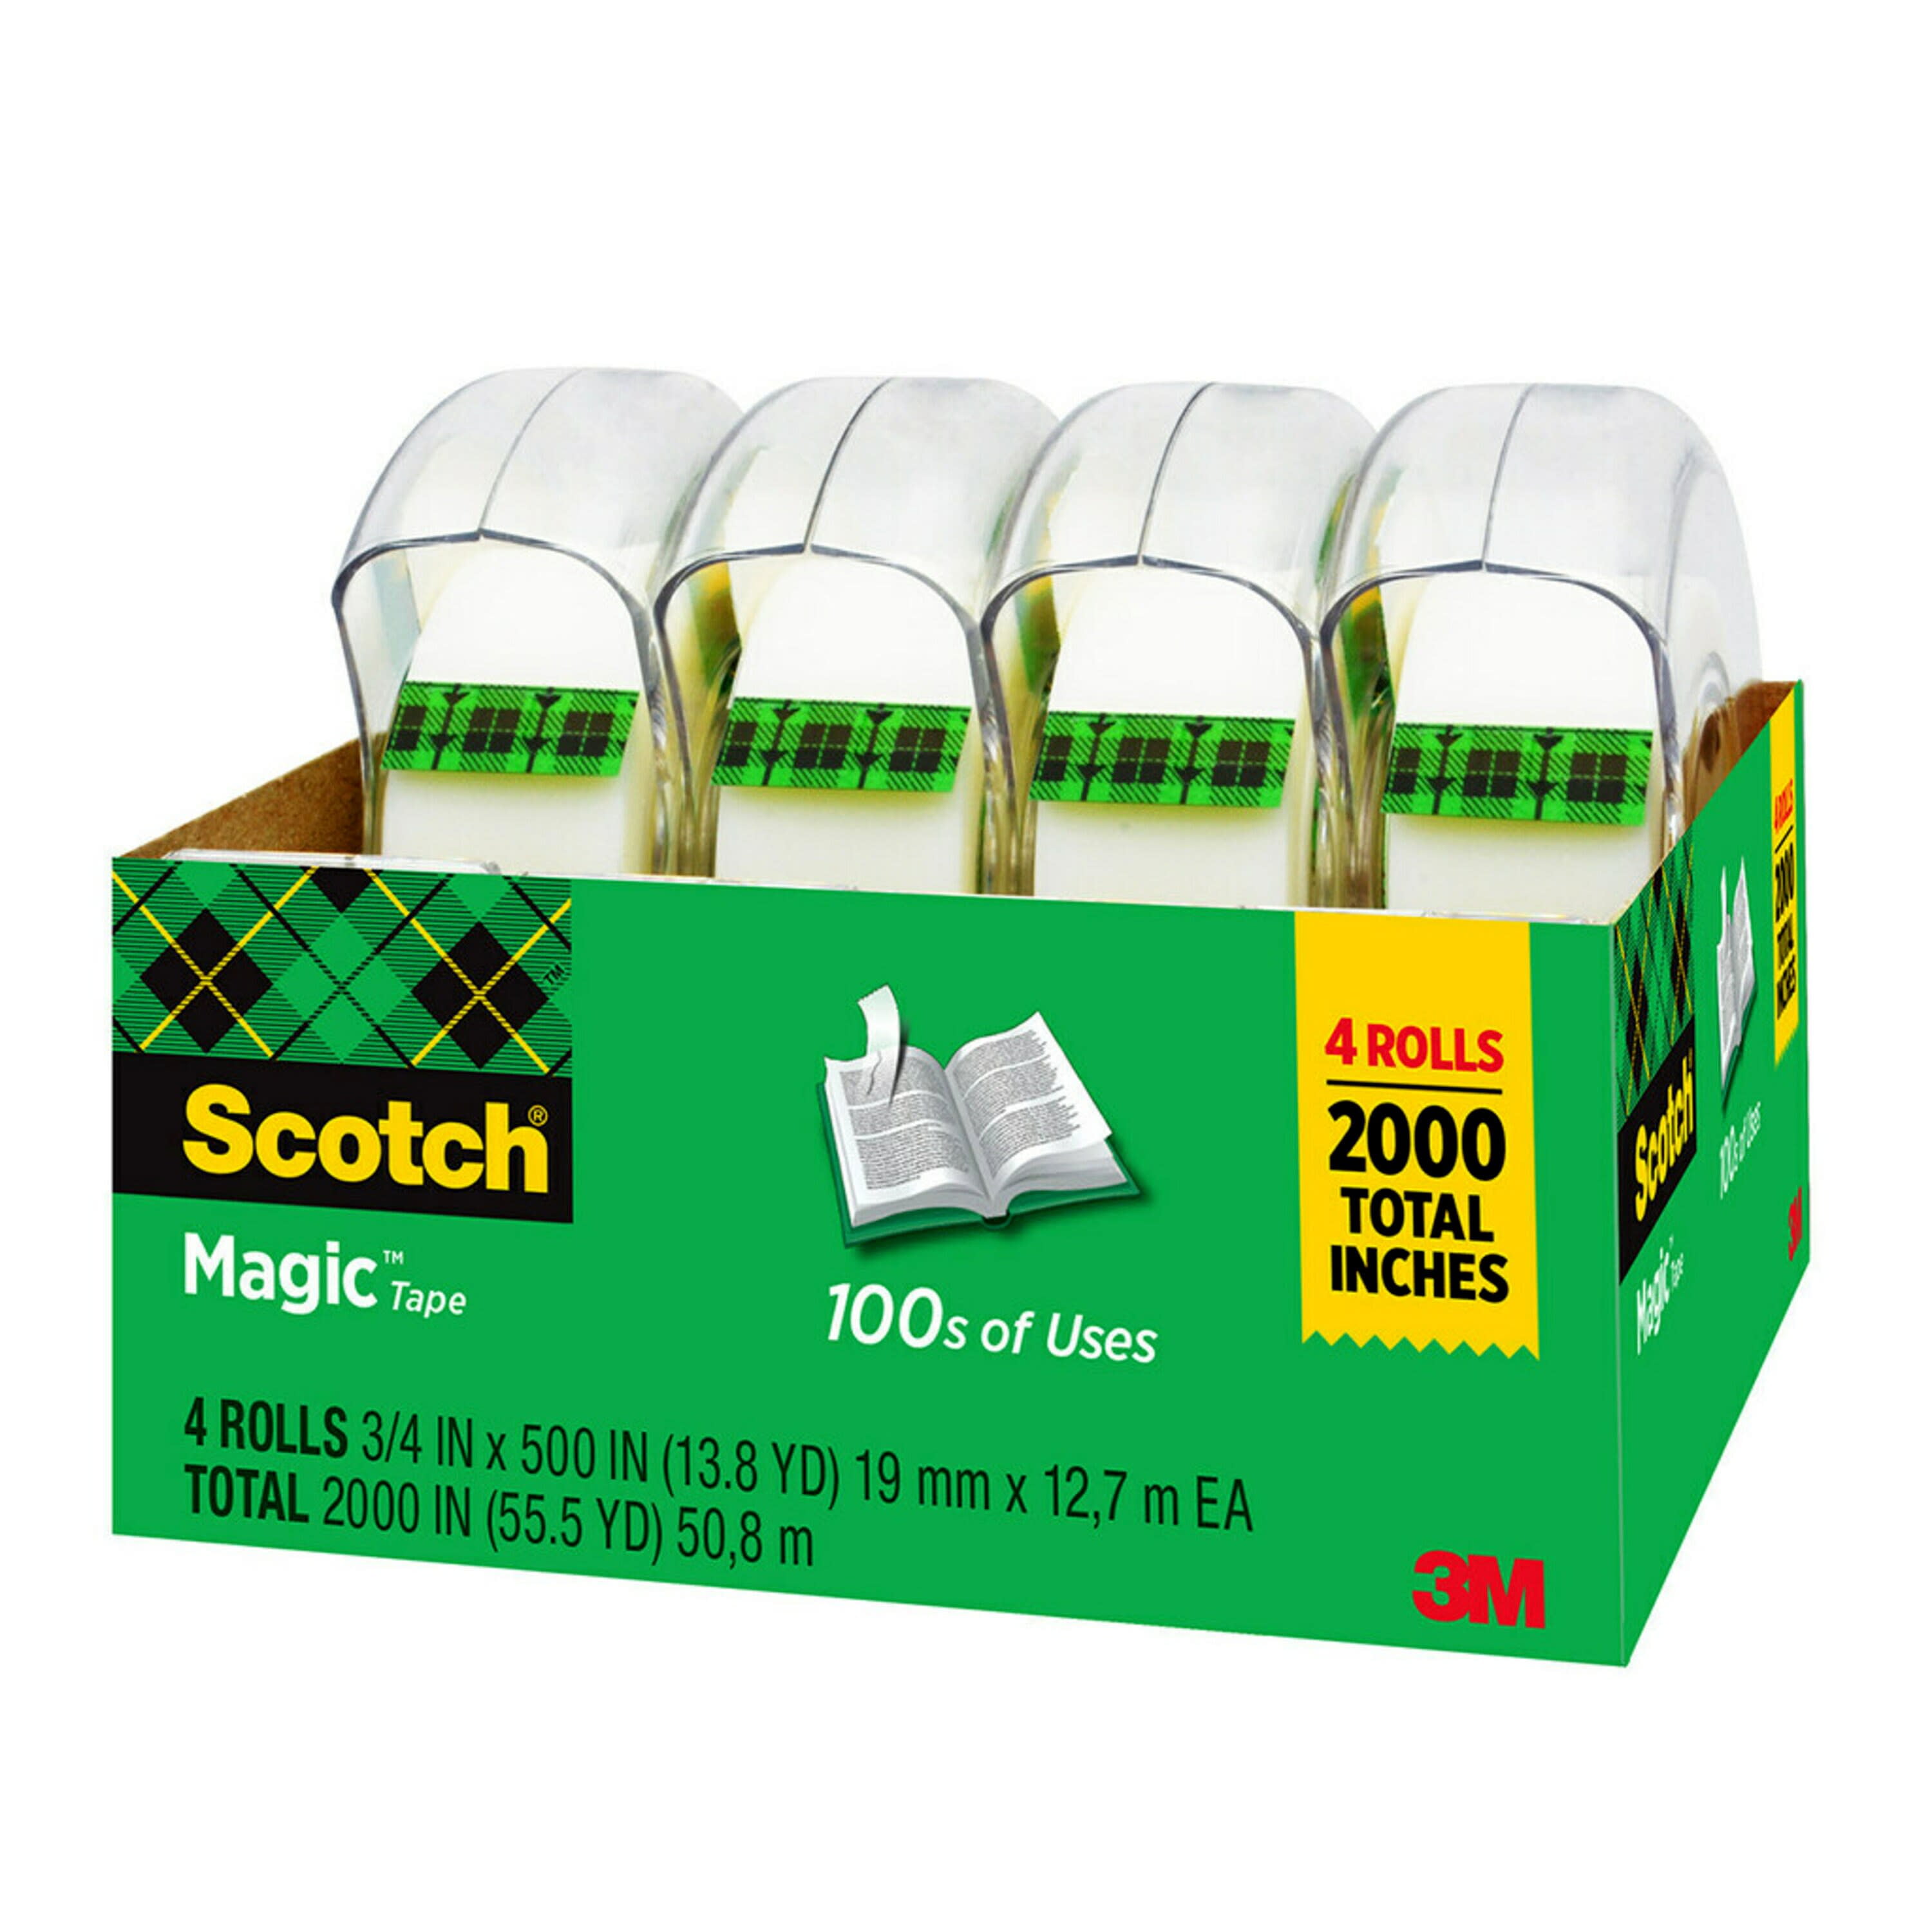 Better Pack 500 Paper Tape Dispenser